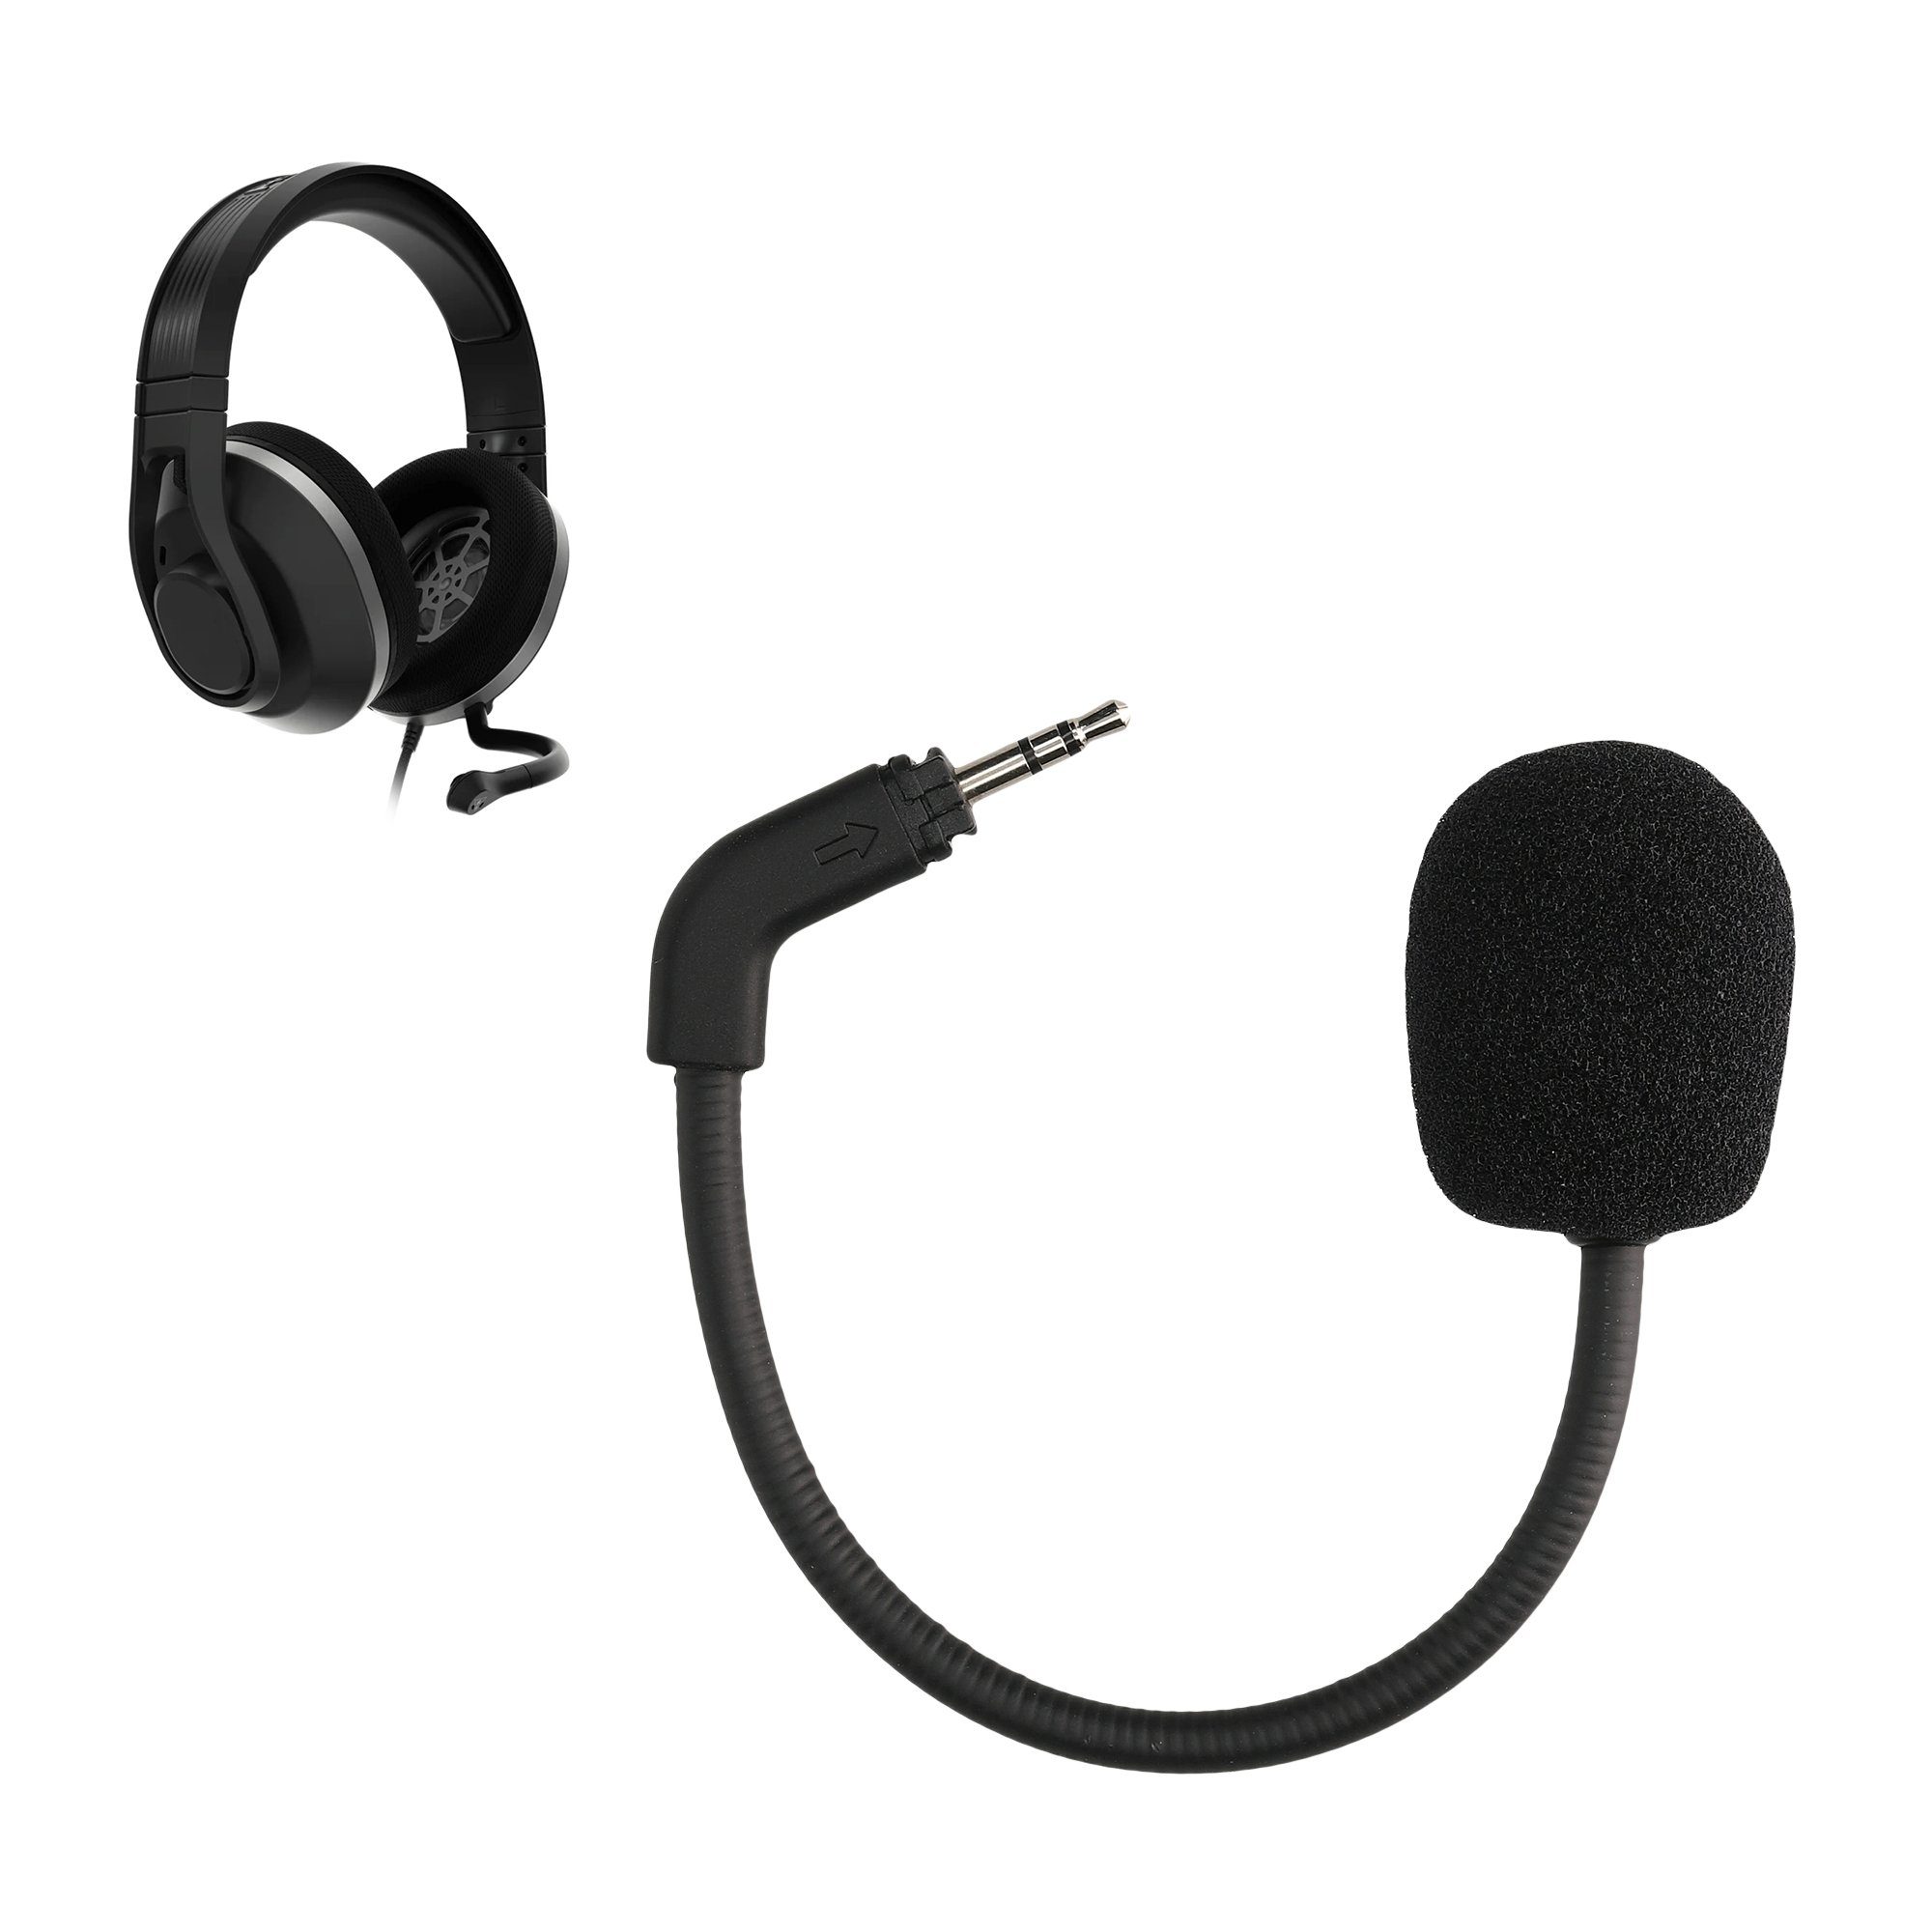 kwmobile Ersatz Kopfhörer Mikrofon Gaming-Headset TurtleBeach (Headset Recon Microphone) 500 für Zubehör